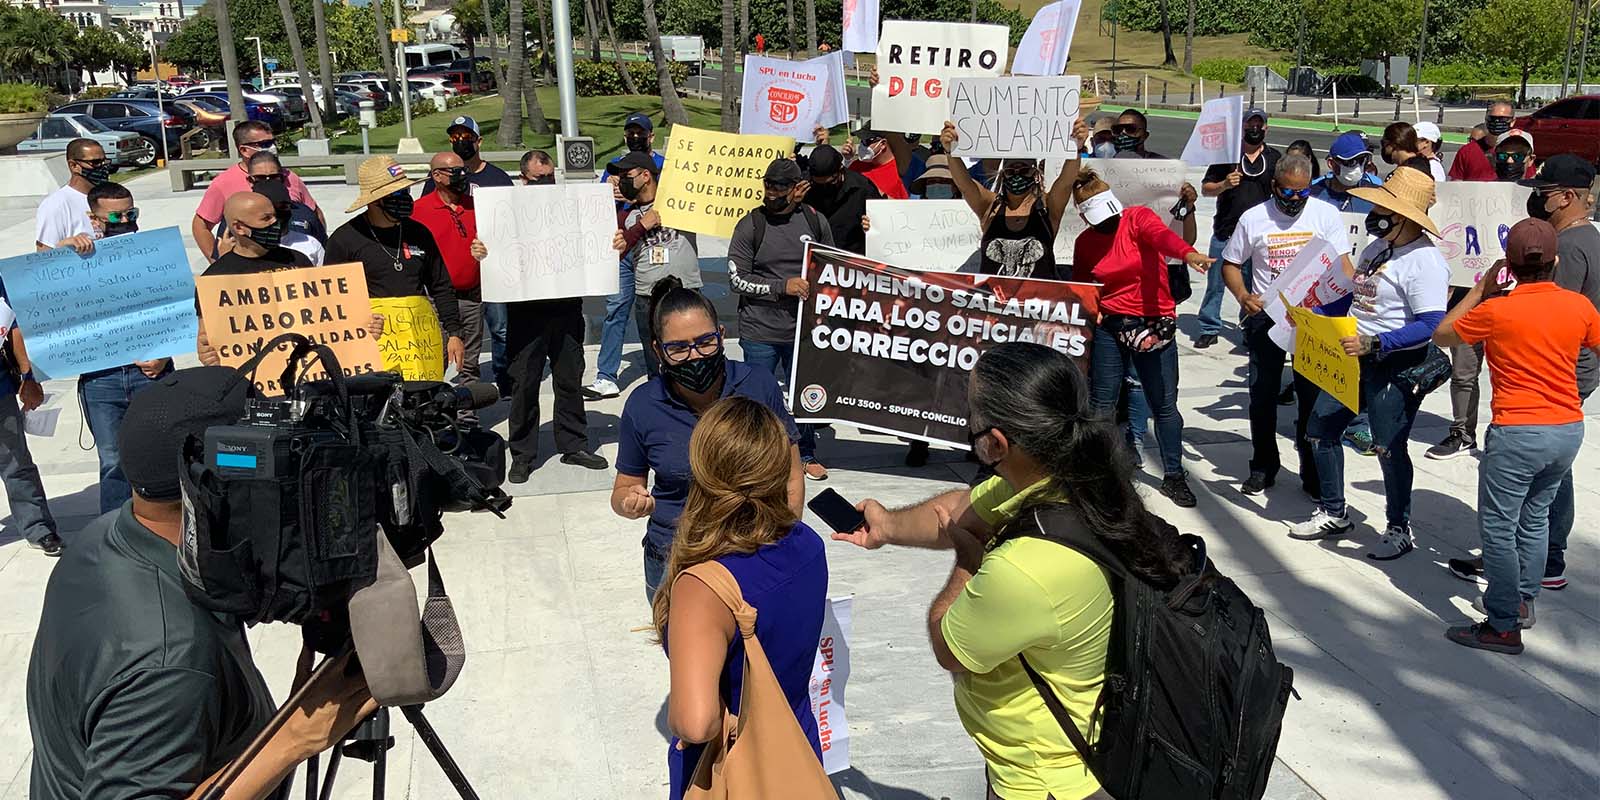 Oficiales correccionales de Puerto Rico se manifiestan para pedir justicia salarial